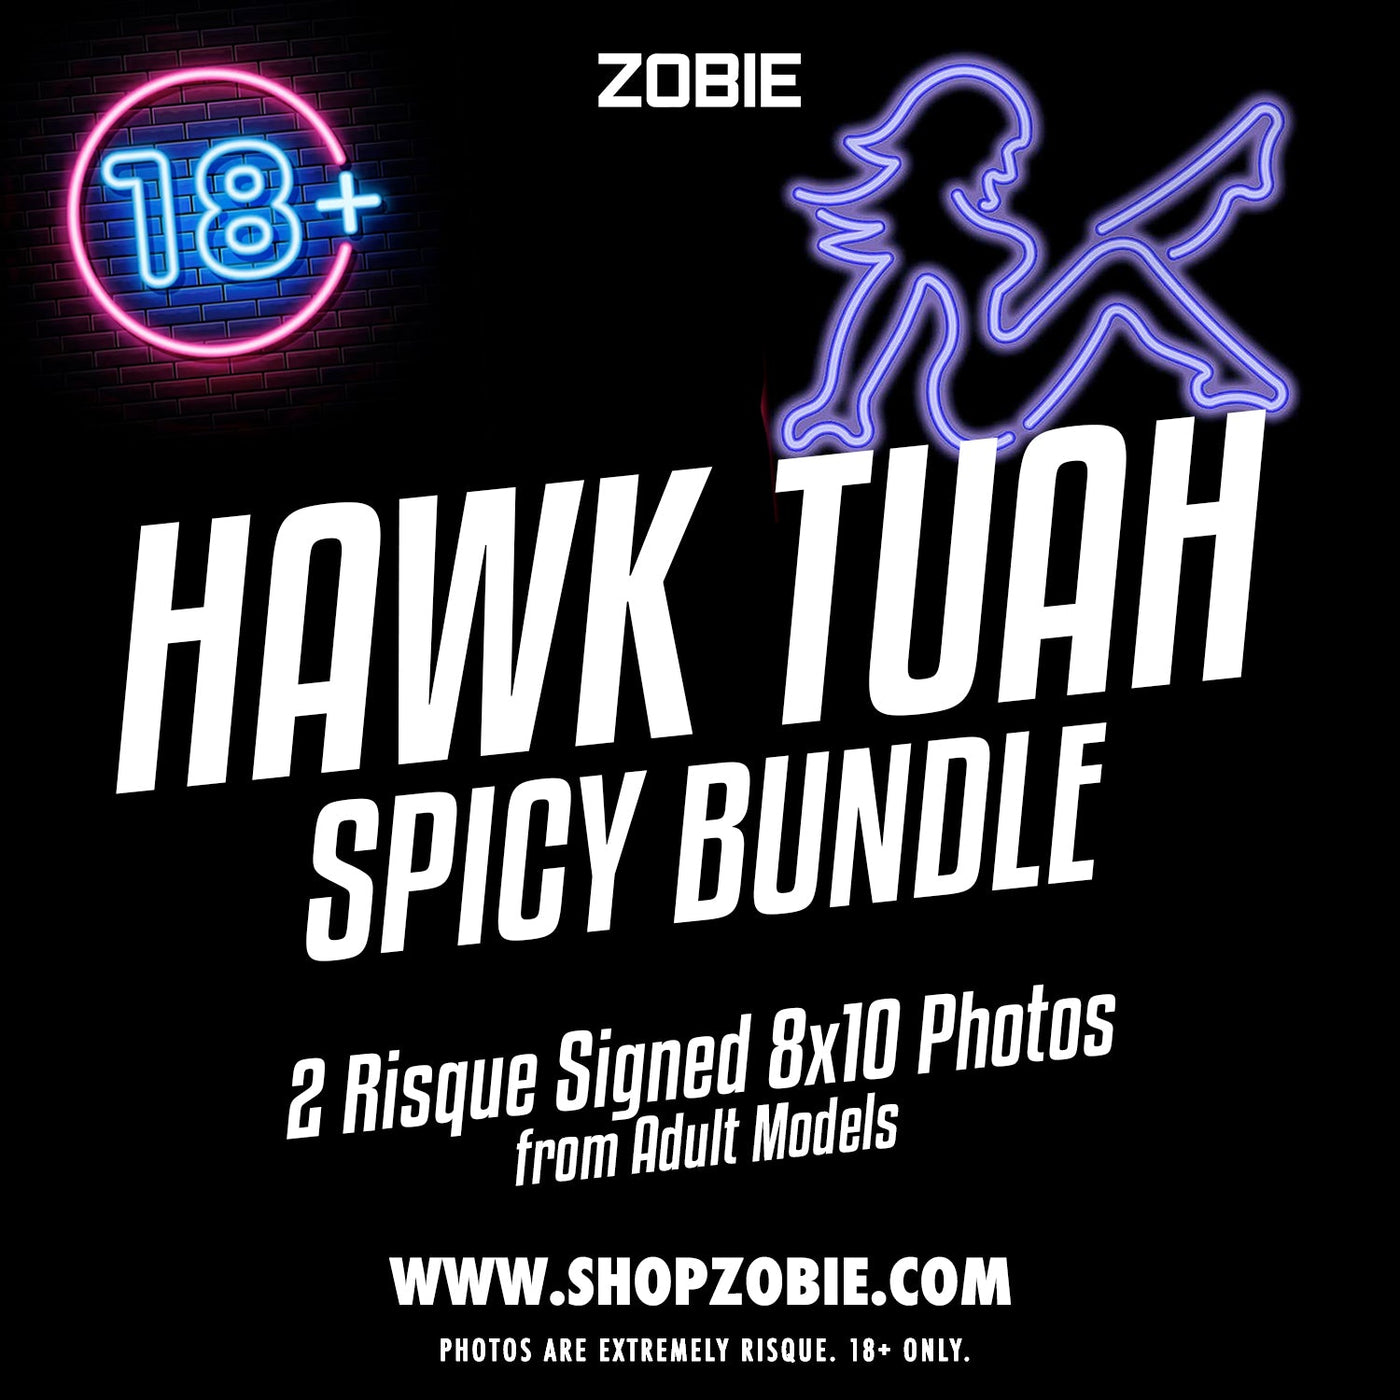 SPECIAL Hawk Tuah Spicy Bundle - 2 Signed Photos